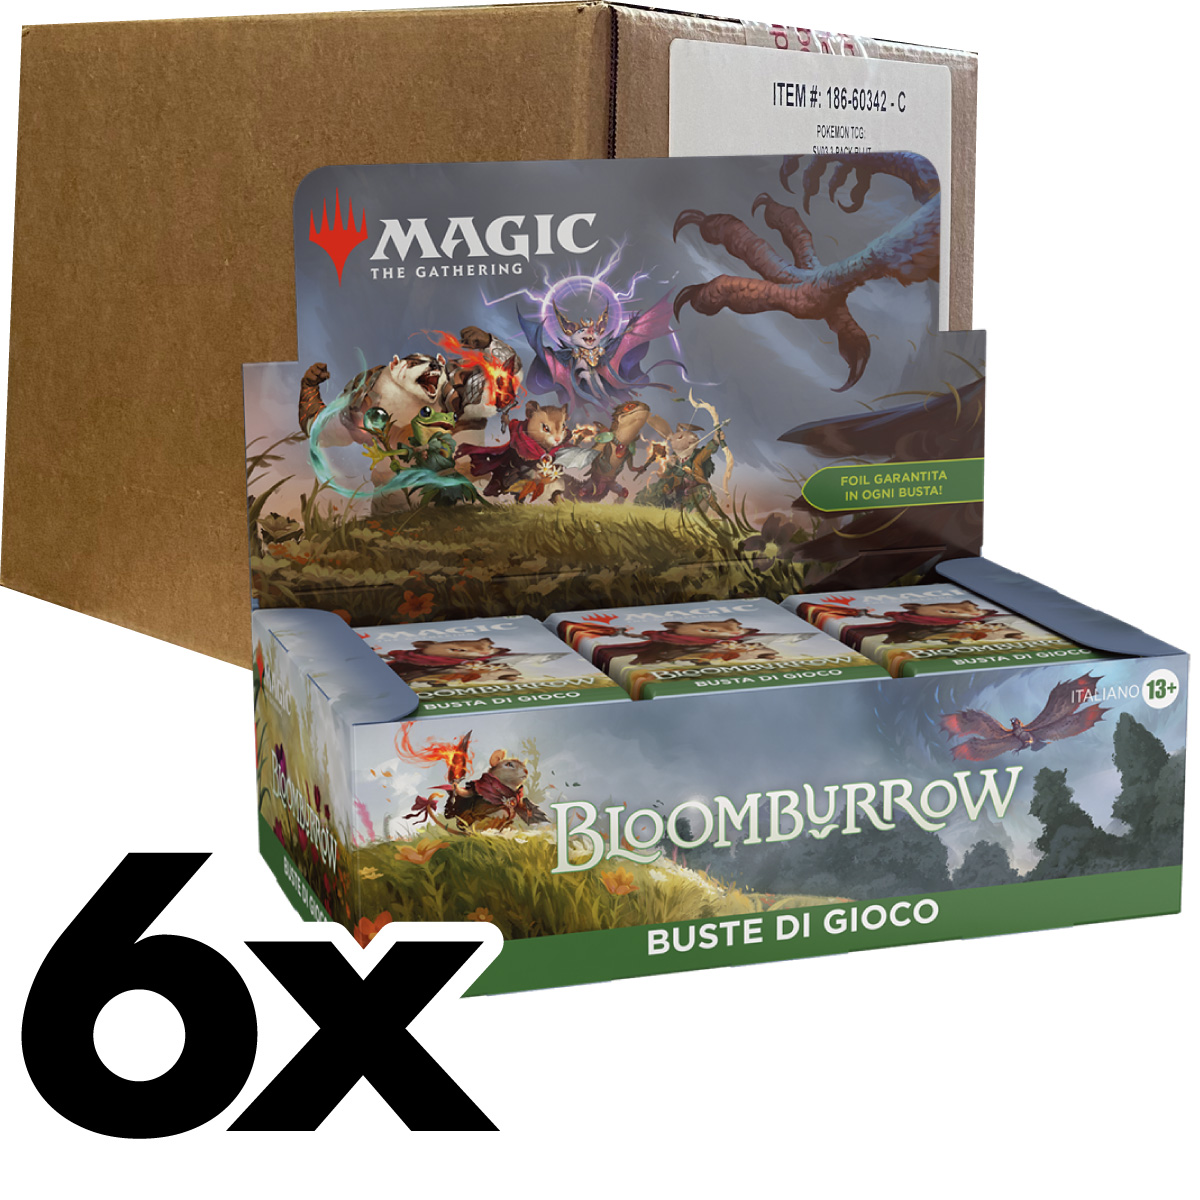 magic the gathering - bloomburrow - busta di gioco - case sigillato 6x box 36 buste (ita)